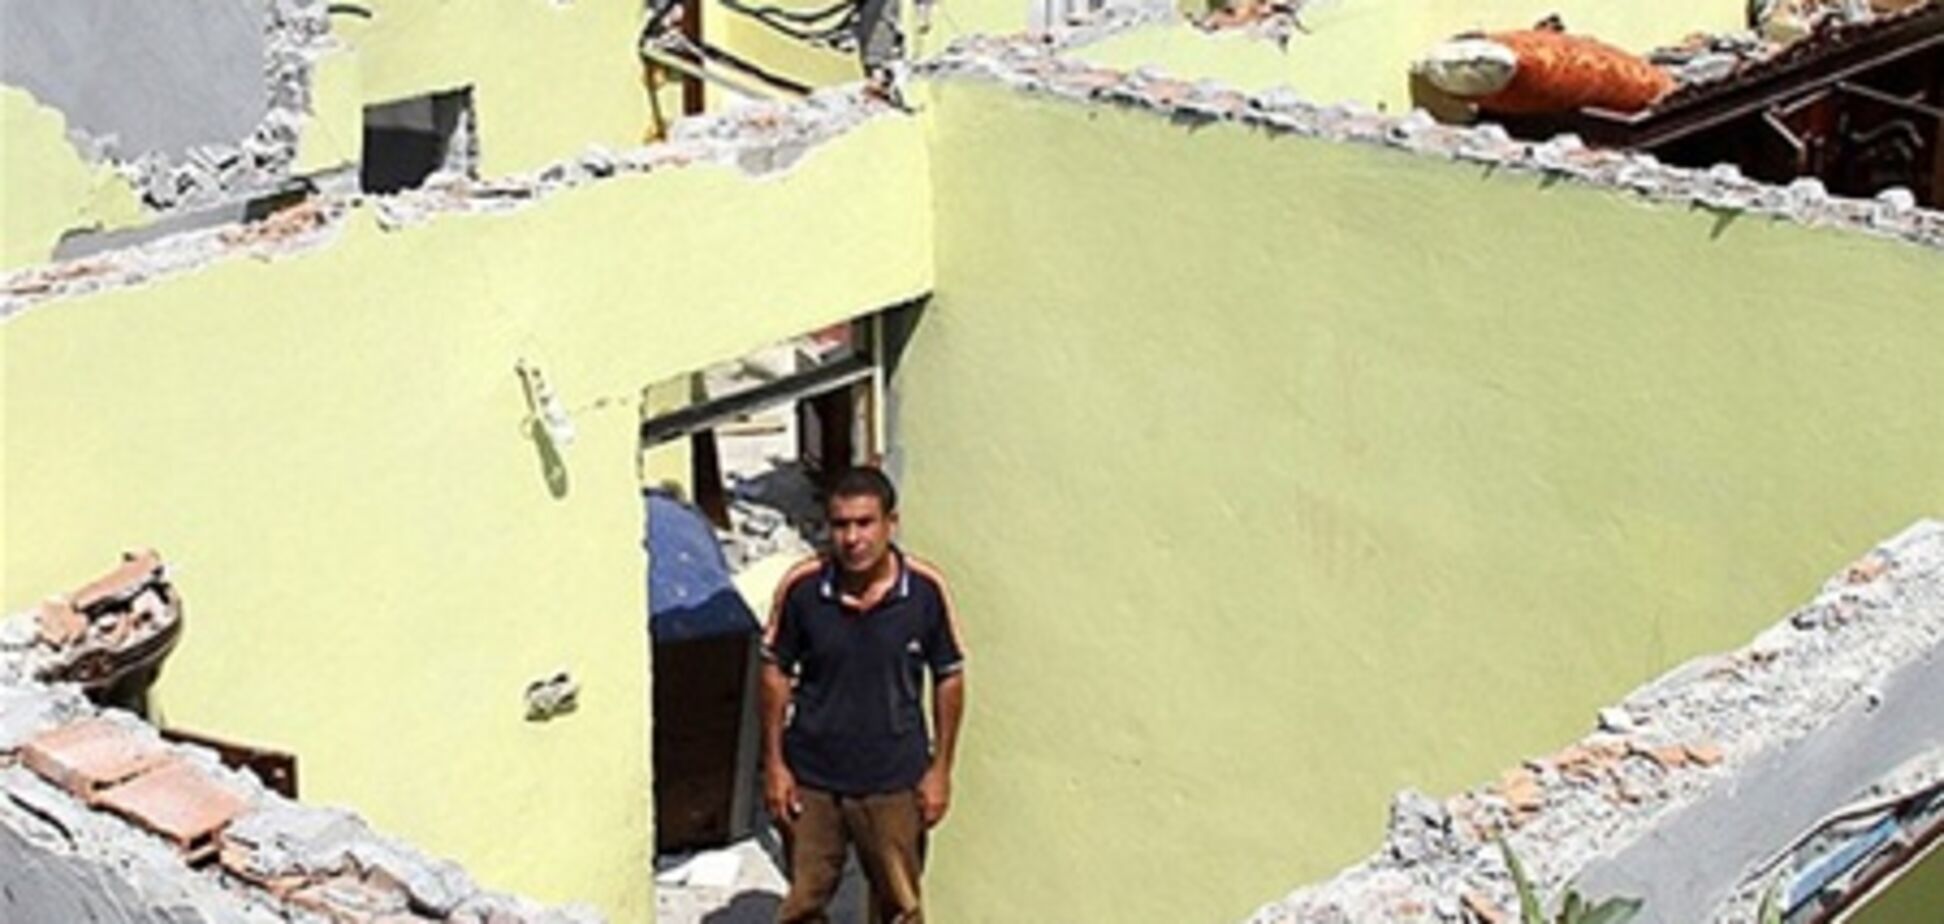 Розлучення по-турецьки: дружина забрала з дому все, включаючи вікна і дах